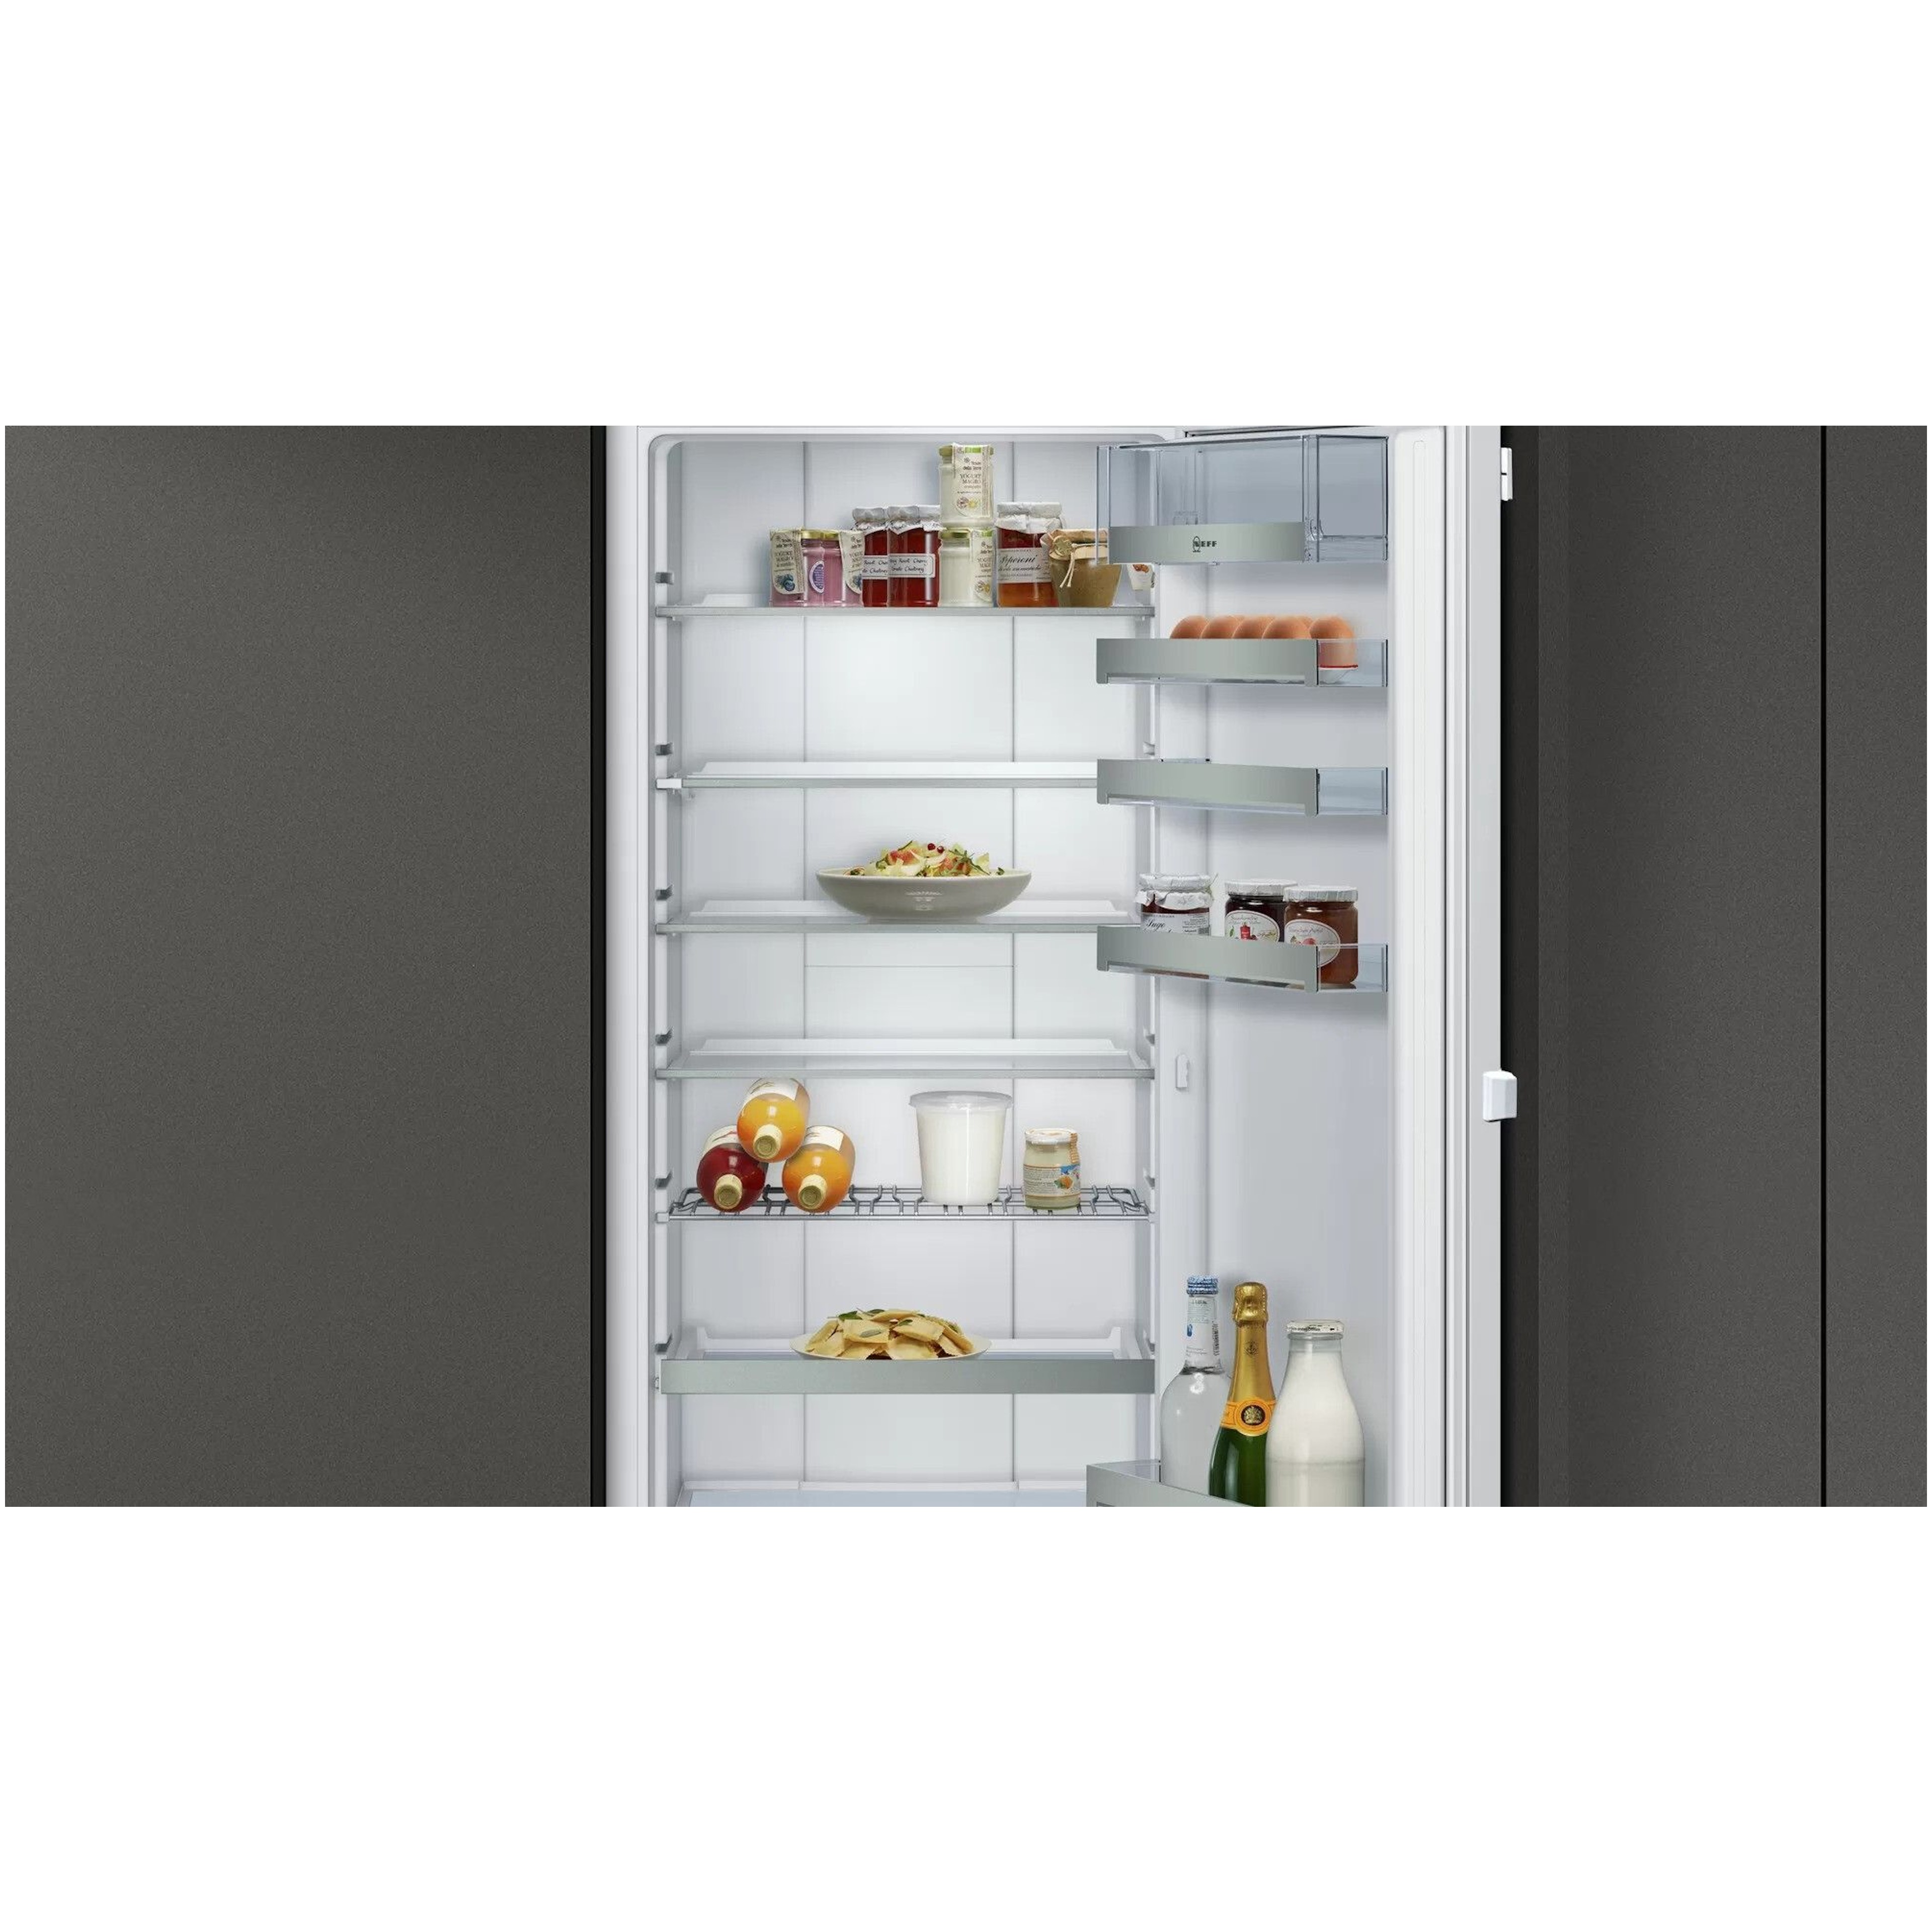 Neff koelkast inbouw KI8816DE0 afbeelding 4